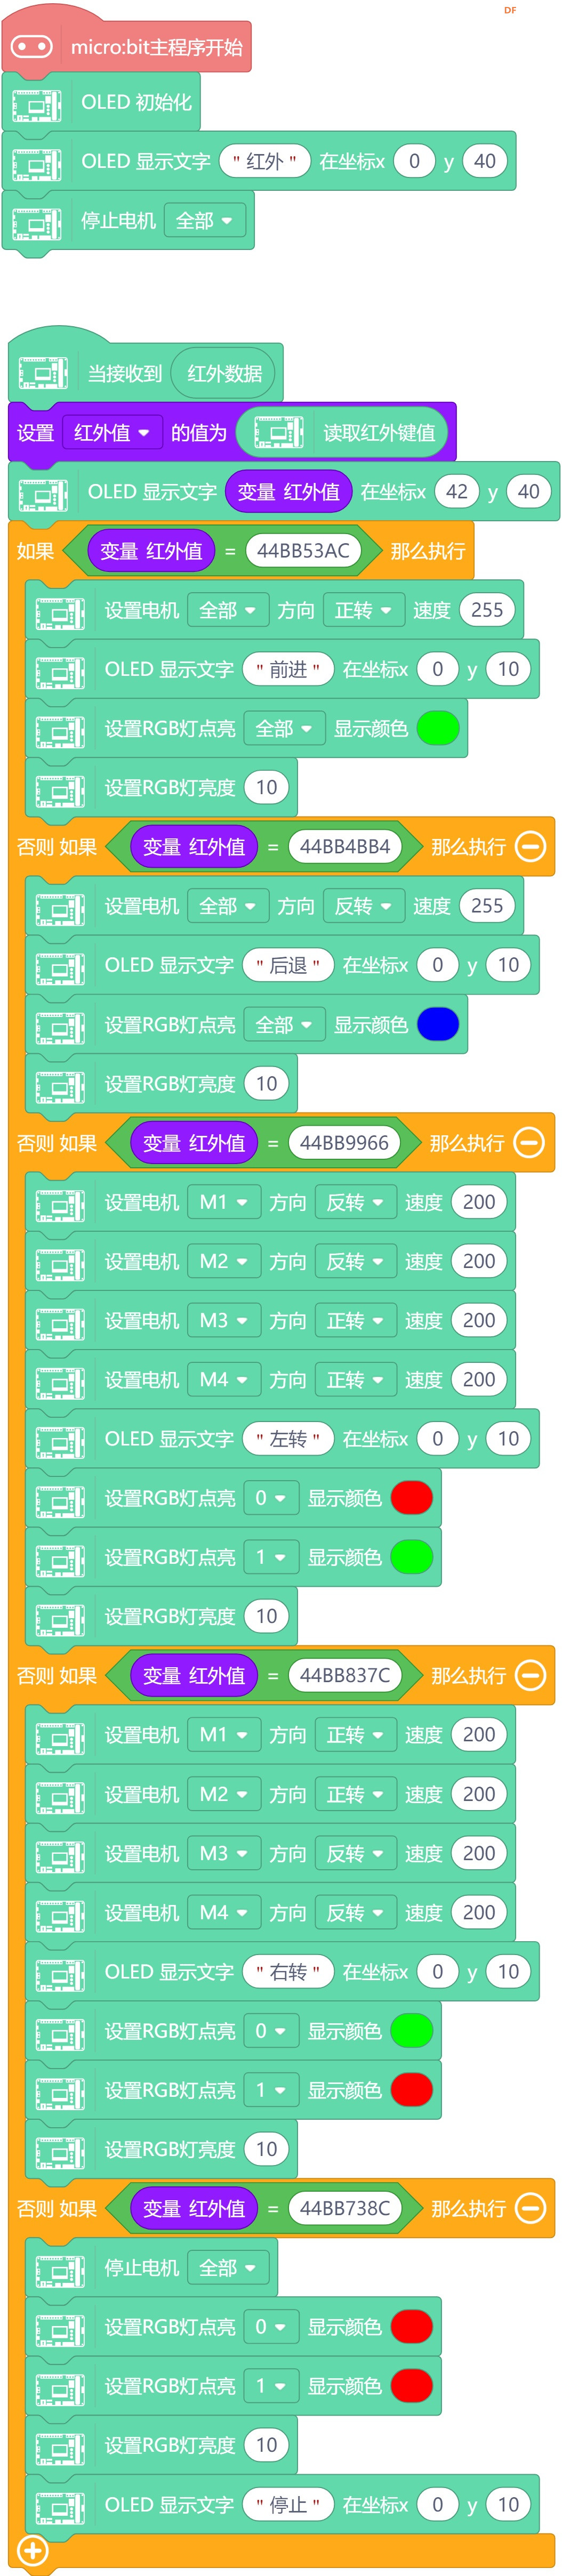 【虾米扩展板测评】02红外遥控小车图11